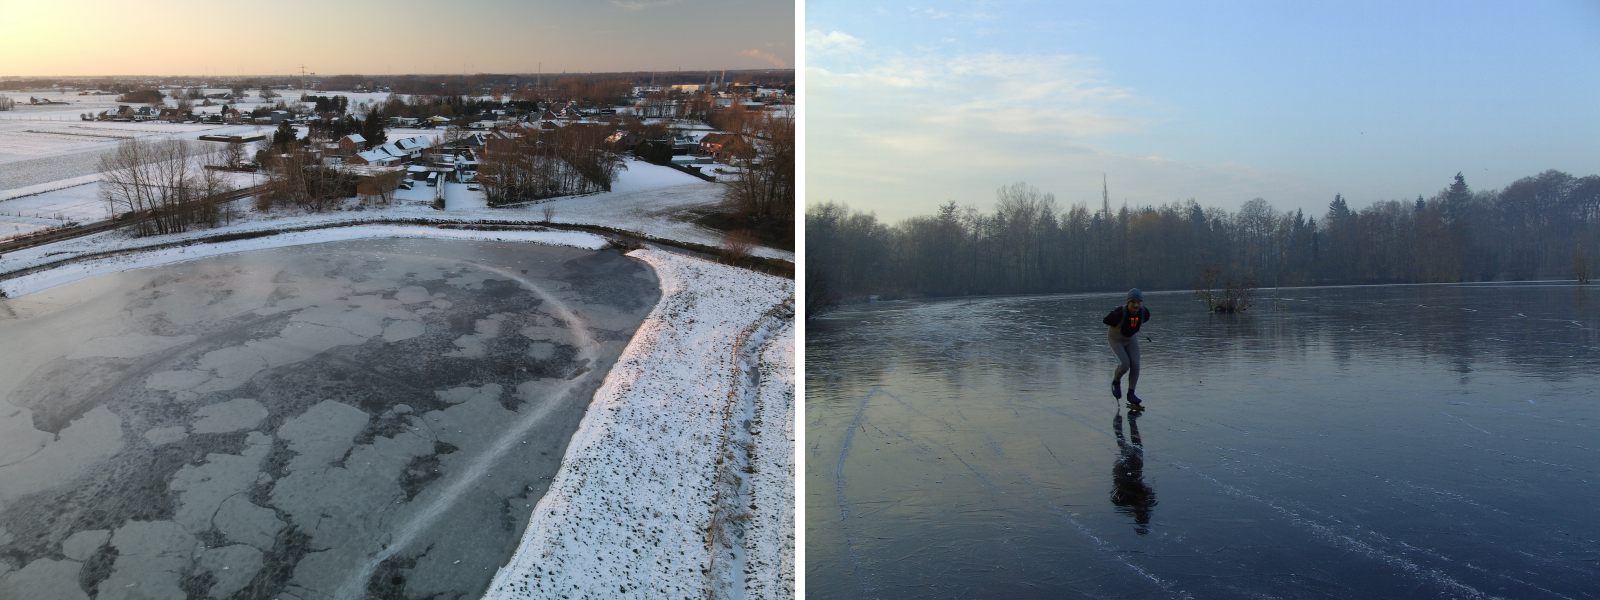 Links: dronebeelden helpen de ijsvorming op te volgen; rechts: zwart ijs, de natte droom van elke schaatser (foto's: Karel Van Bruyssel)